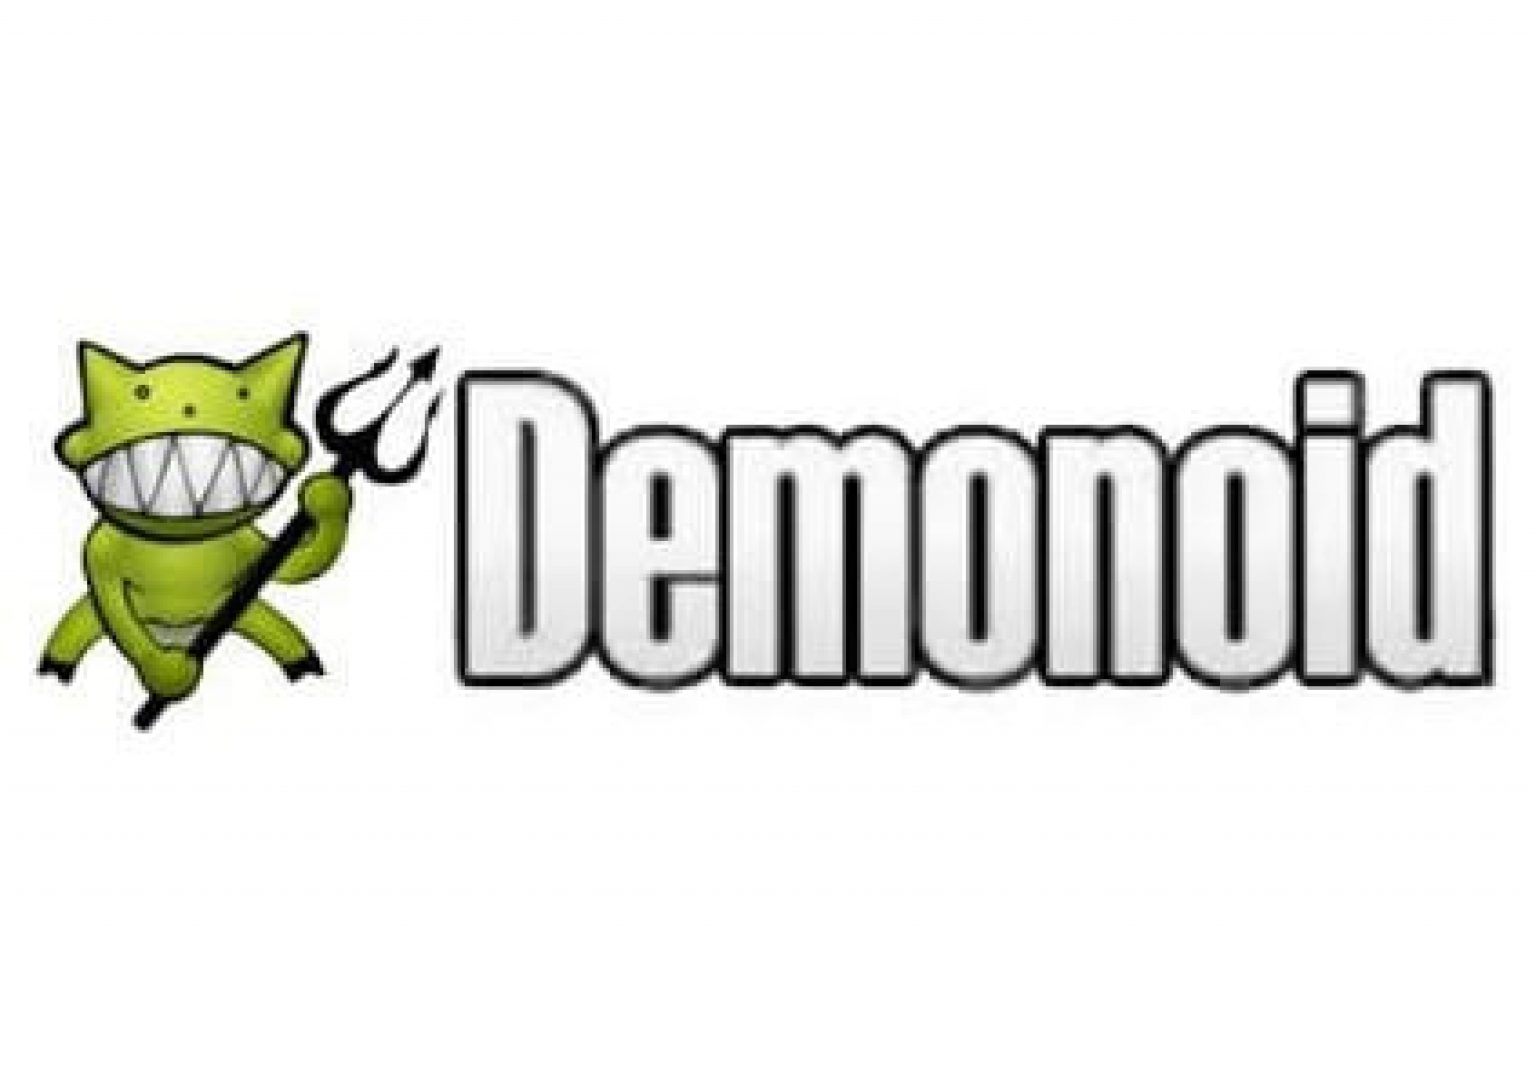 demonoid torrent mac